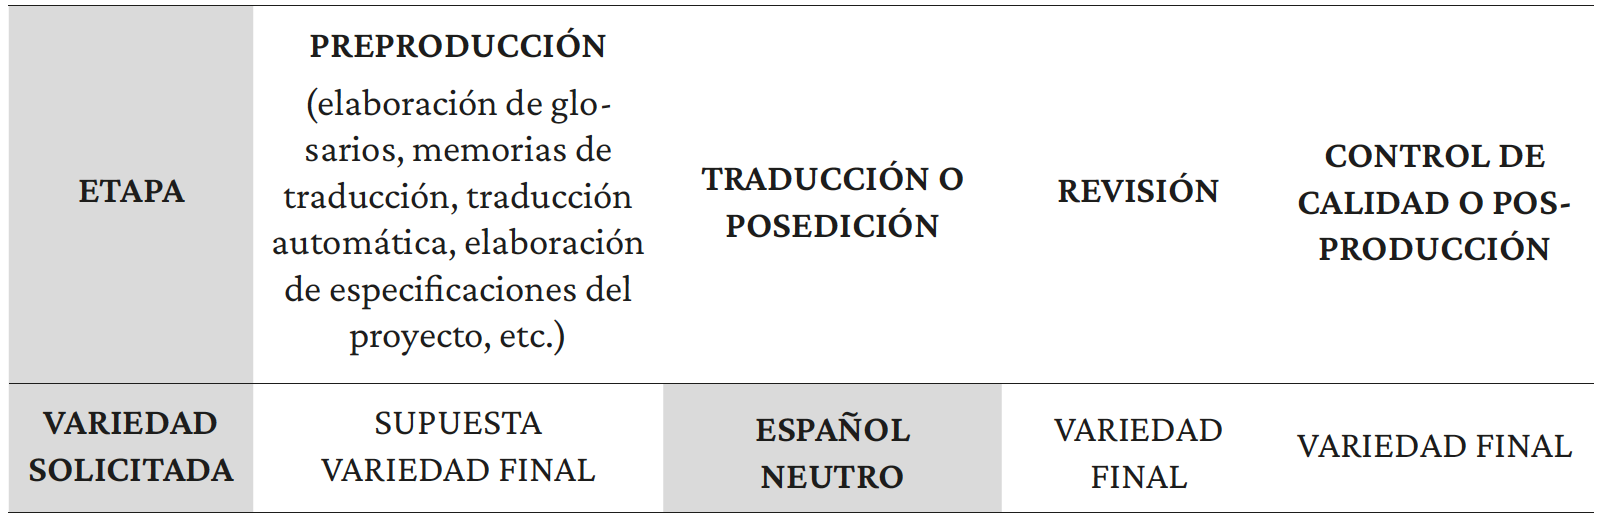 Tabla 2. Modelo abreviado de proceso de traducción (adaptado de Cid-Leal et al., 2019, p. 204)